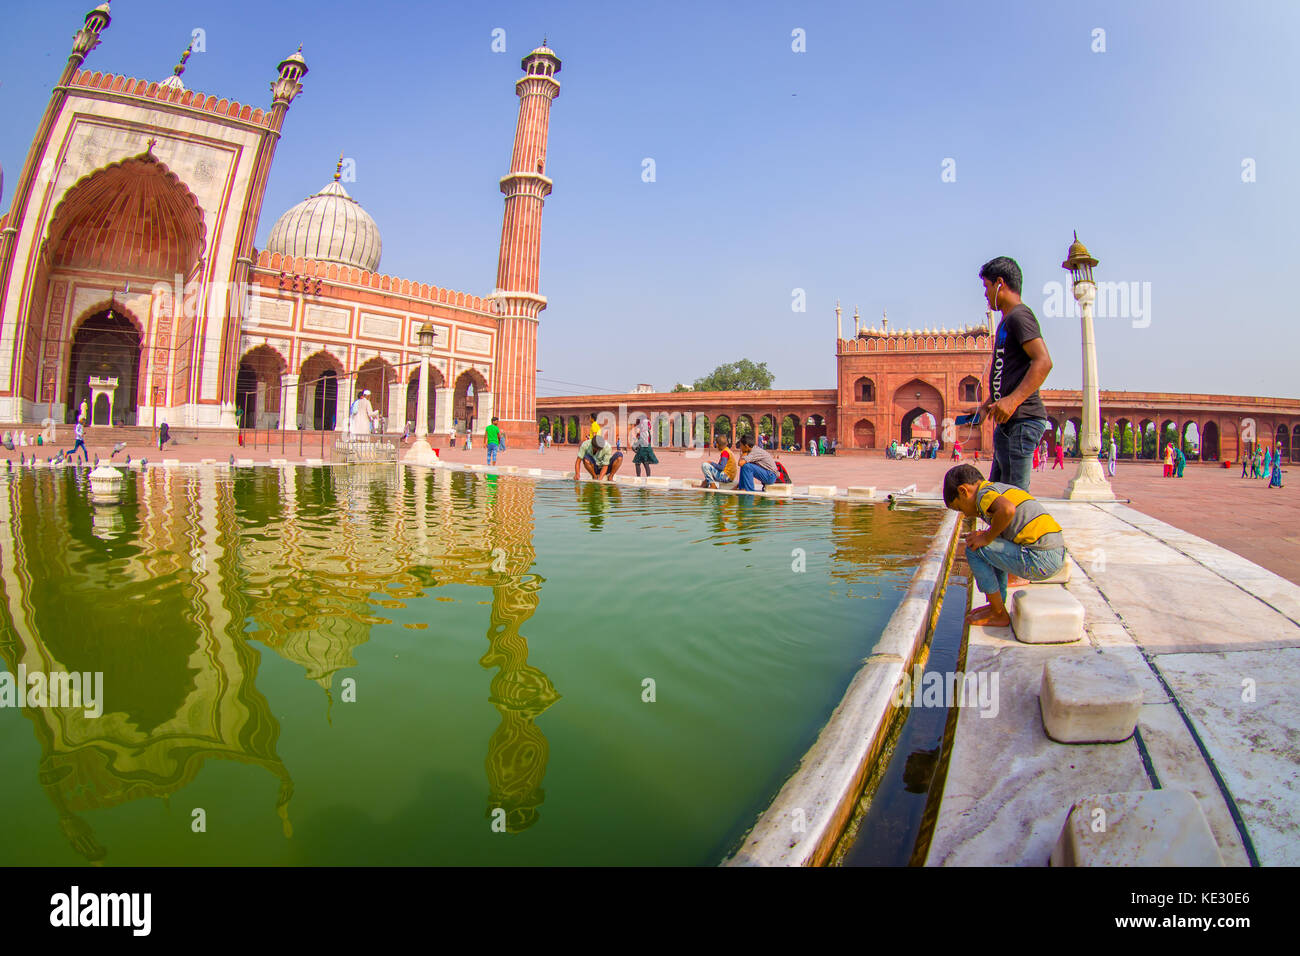 Delhi, Indien - 27. September 2017: Clos eup von unbekannten Menschen zu Fuß in der Nähe des künstlichen Teich vor einem wunderschönen Jama Masjid Tempel, das ist die größte Moschee in Indien Delhi, Indien, Fischaugen-Effekt Stockfoto